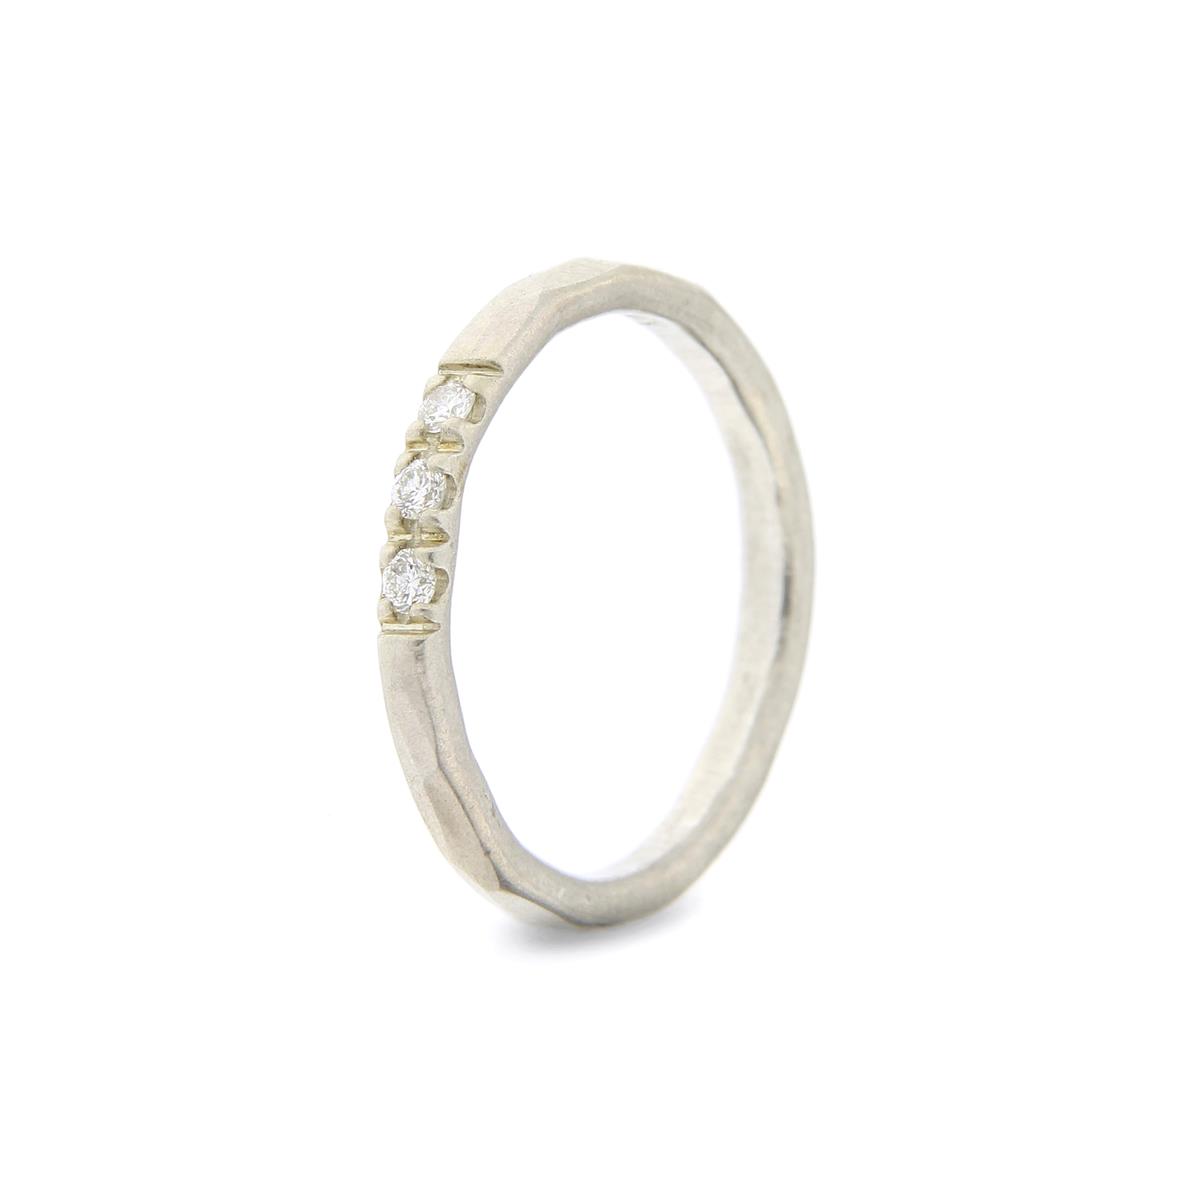 Katie g. Jewellery - Hammered Ring 2,0mm - sterling silber + 3 brillanten - Ring um 80€ und pro Brillant 90€ - mehrere Brillanten auch möglich